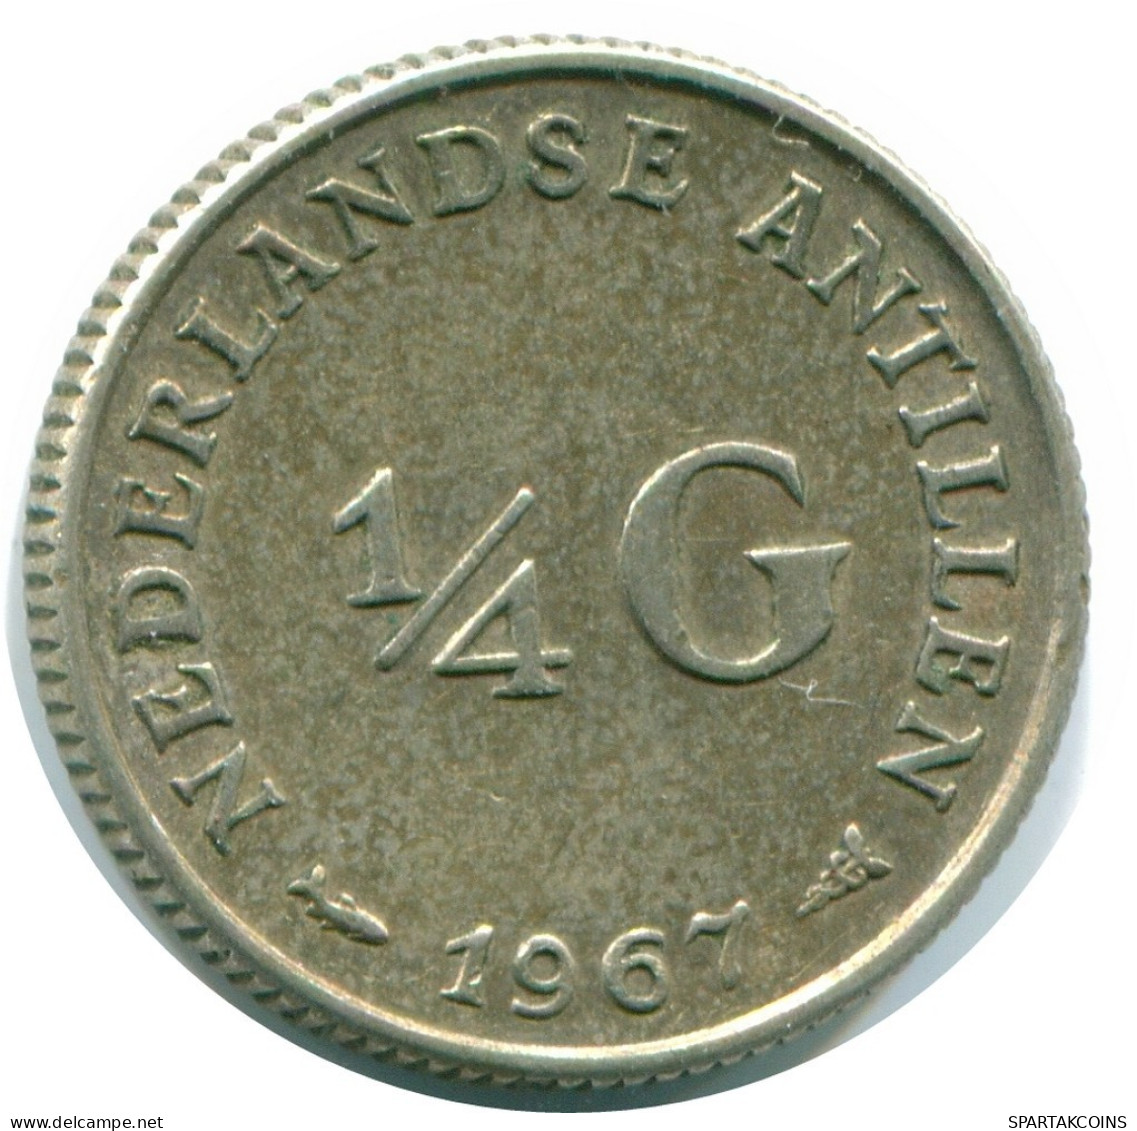 1/4 GULDEN 1967 NIEDERLÄNDISCHE ANTILLEN SILBER Koloniale Münze #NL11529.4.D.A - Niederländische Antillen